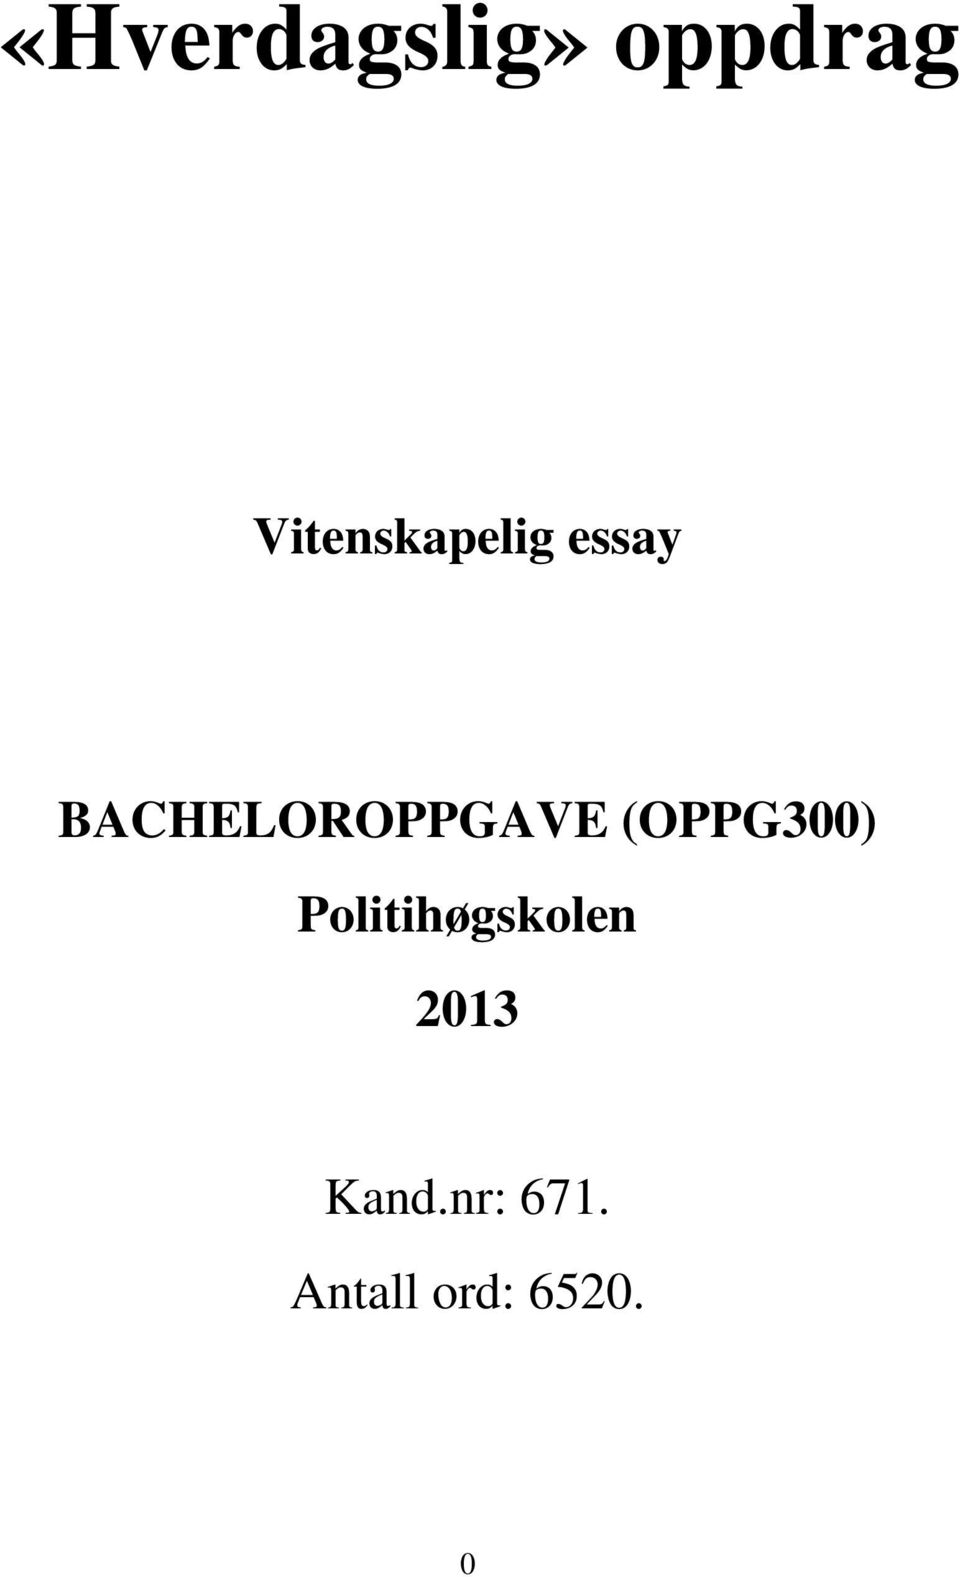 BACHELOROPPGAVE (OPPG300)